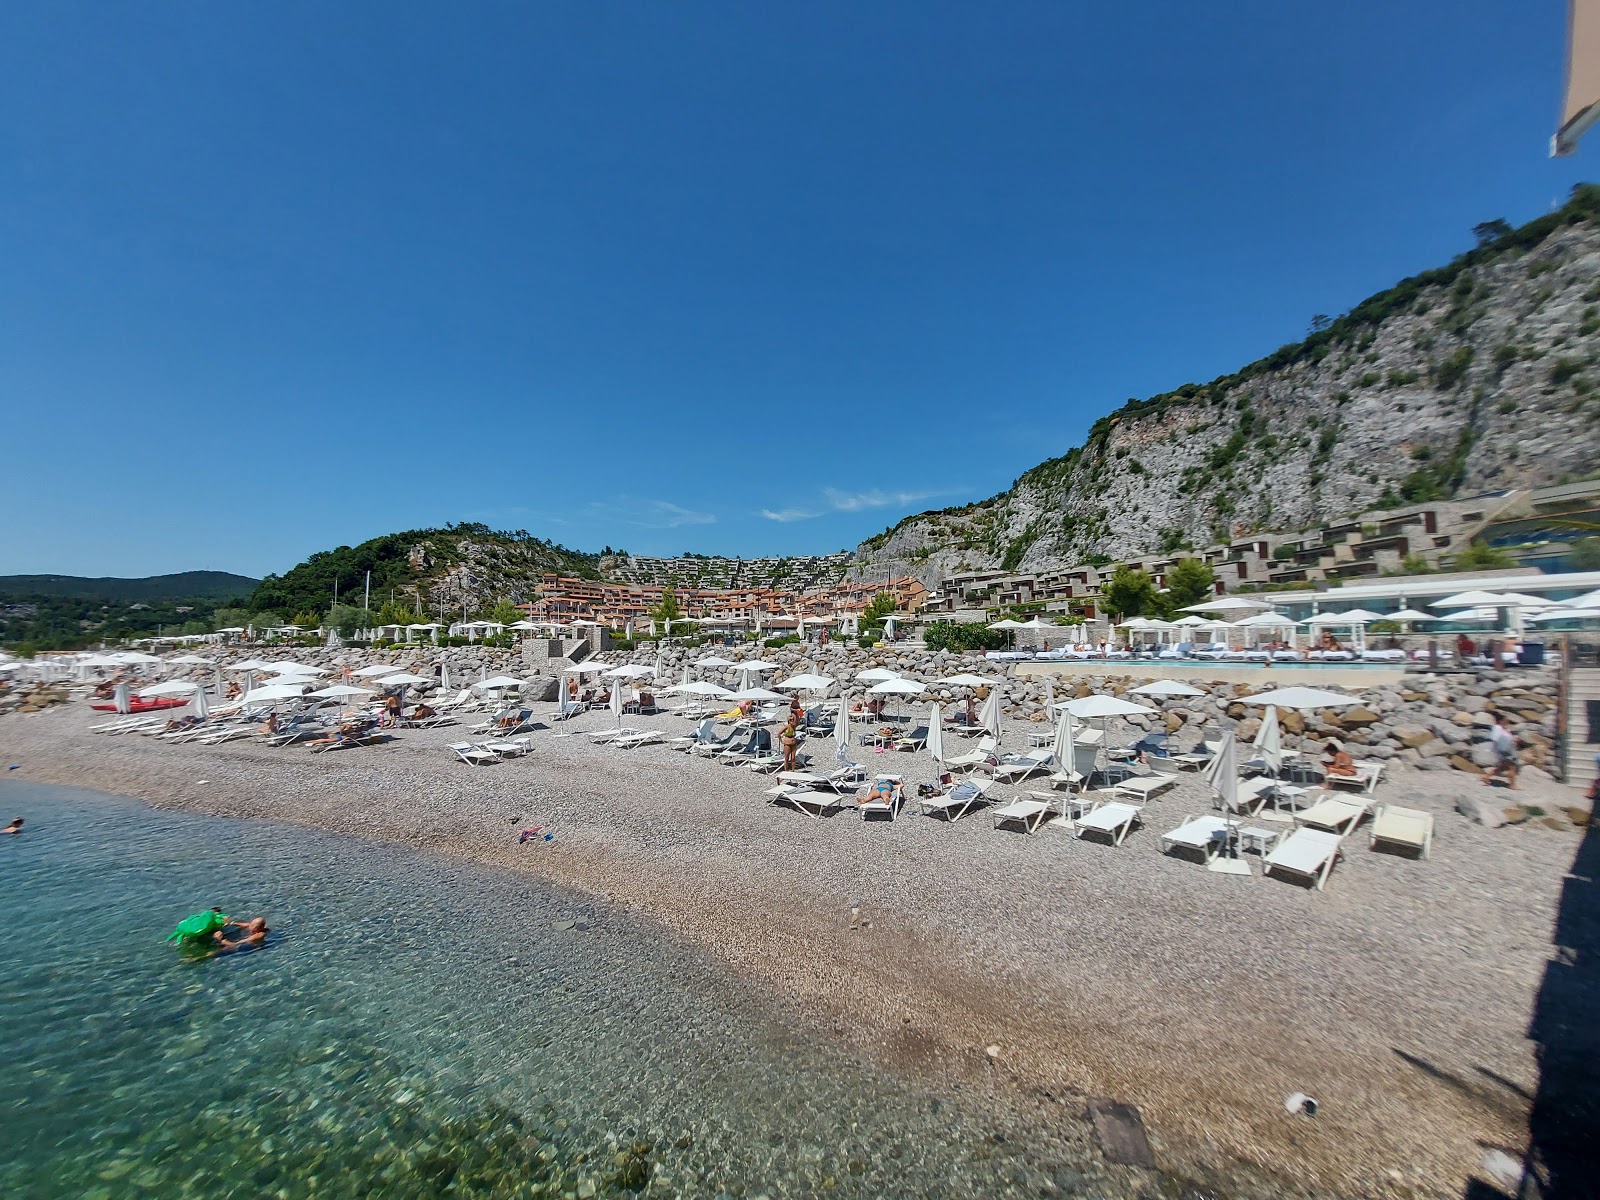 Foto af Spiaggia di Portopiccolo Sistiana - populært sted blandt afslapningskendere